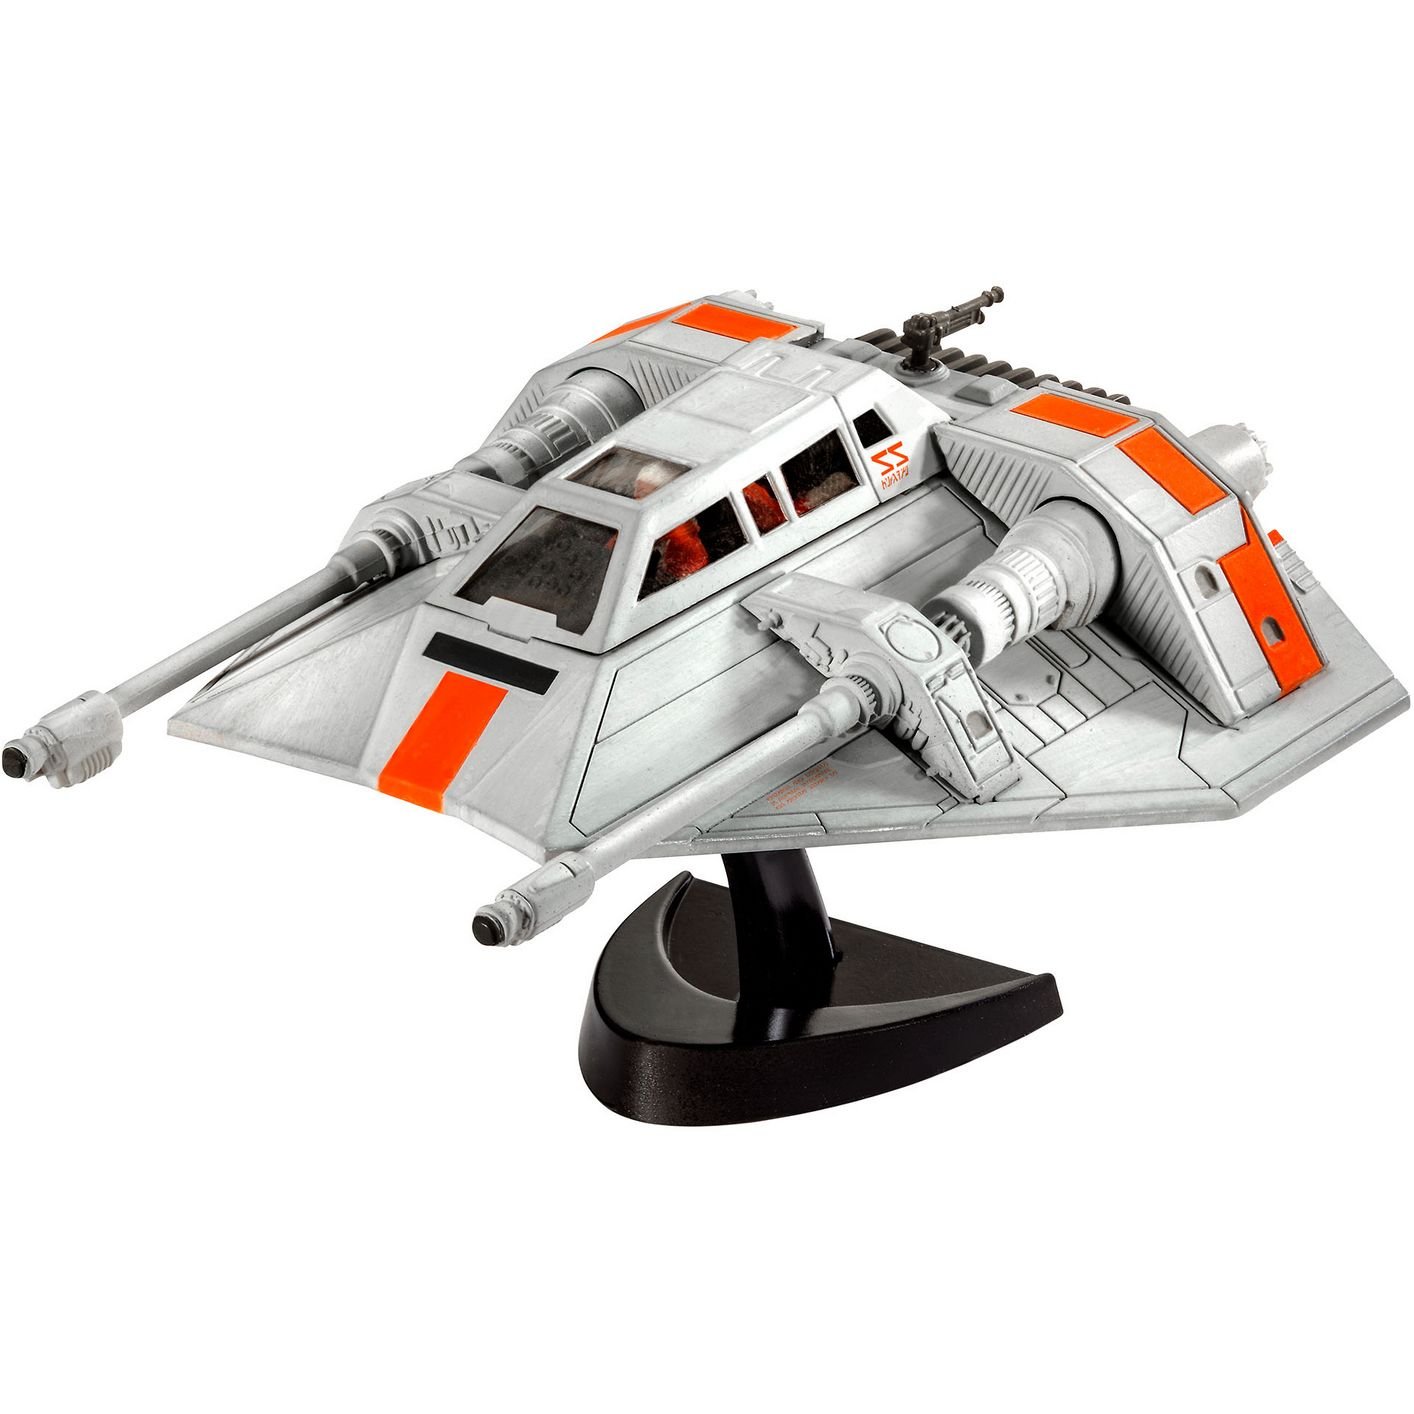 Сборная модель Revell Космический корабль Snowspeeder, уровень 3, масштаб 1:52, 23 детали (RVL-03604) - фото 3